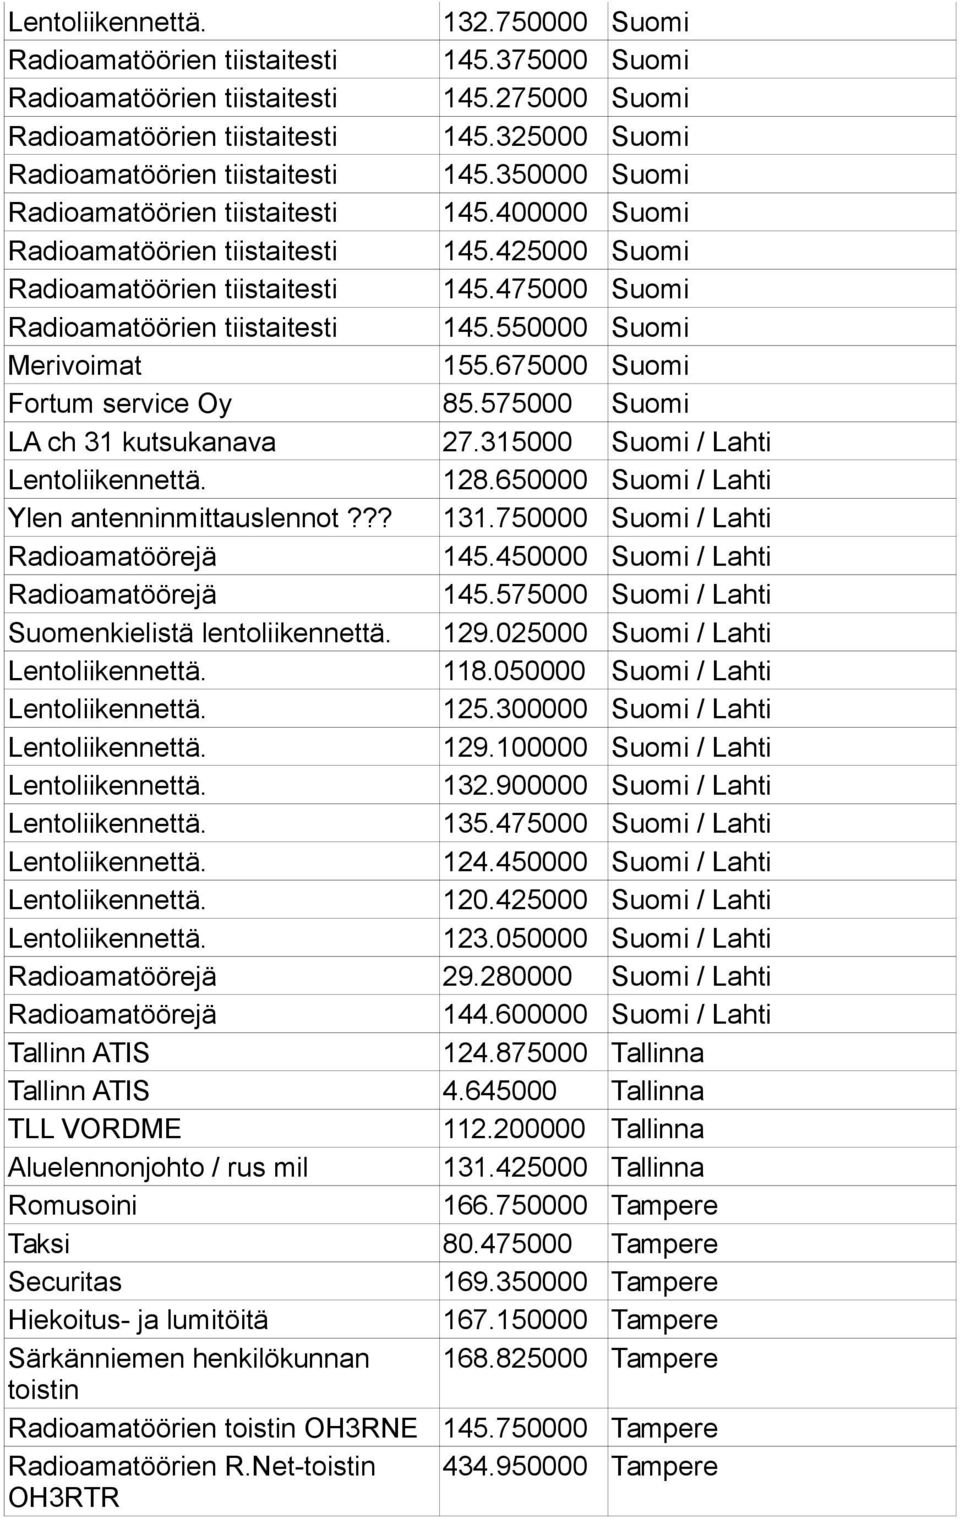 475000 Suomi Radioamatöörien tiistaitesti 145.550000 Suomi Merivoimat 155.675000 Suomi Fortum service Oy 85.575000 Suomi LA ch 31 kutsukanava 27.315000 Suomi / Lahti Lentoliikennettä. 128.